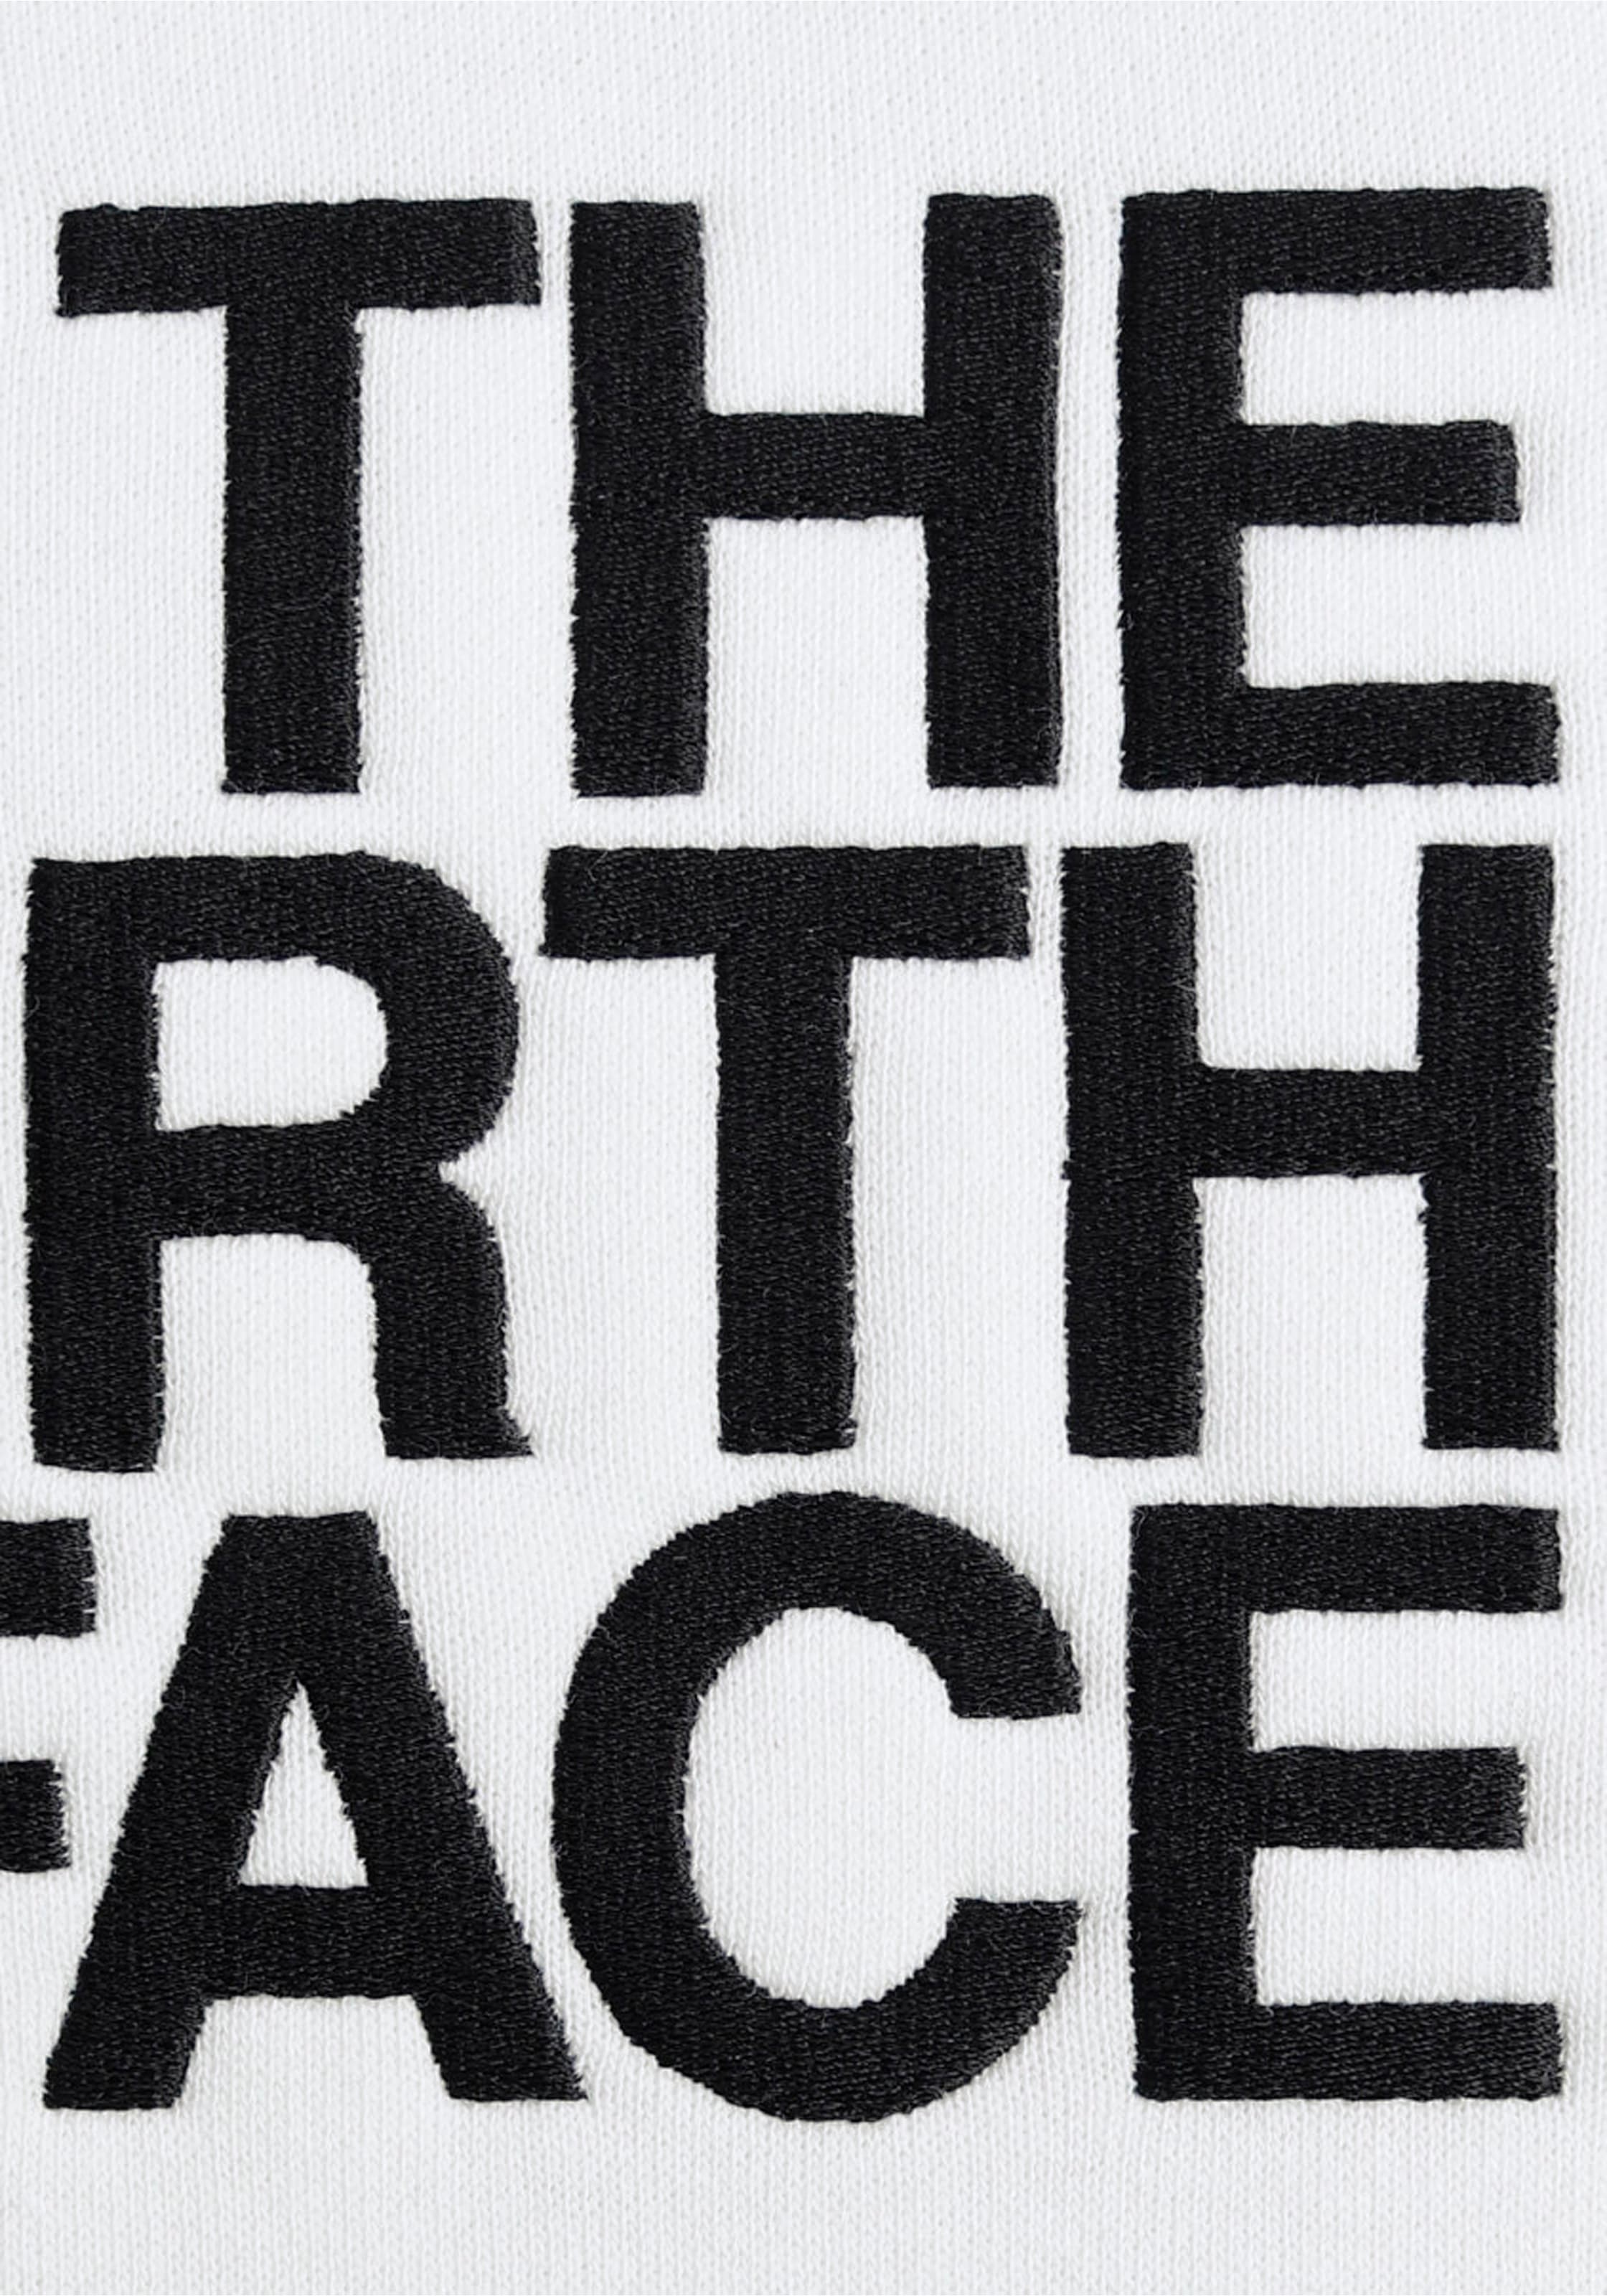 The North Face Hoodie »M DREW PEAK PULLOVER HOODIE« bei ♕